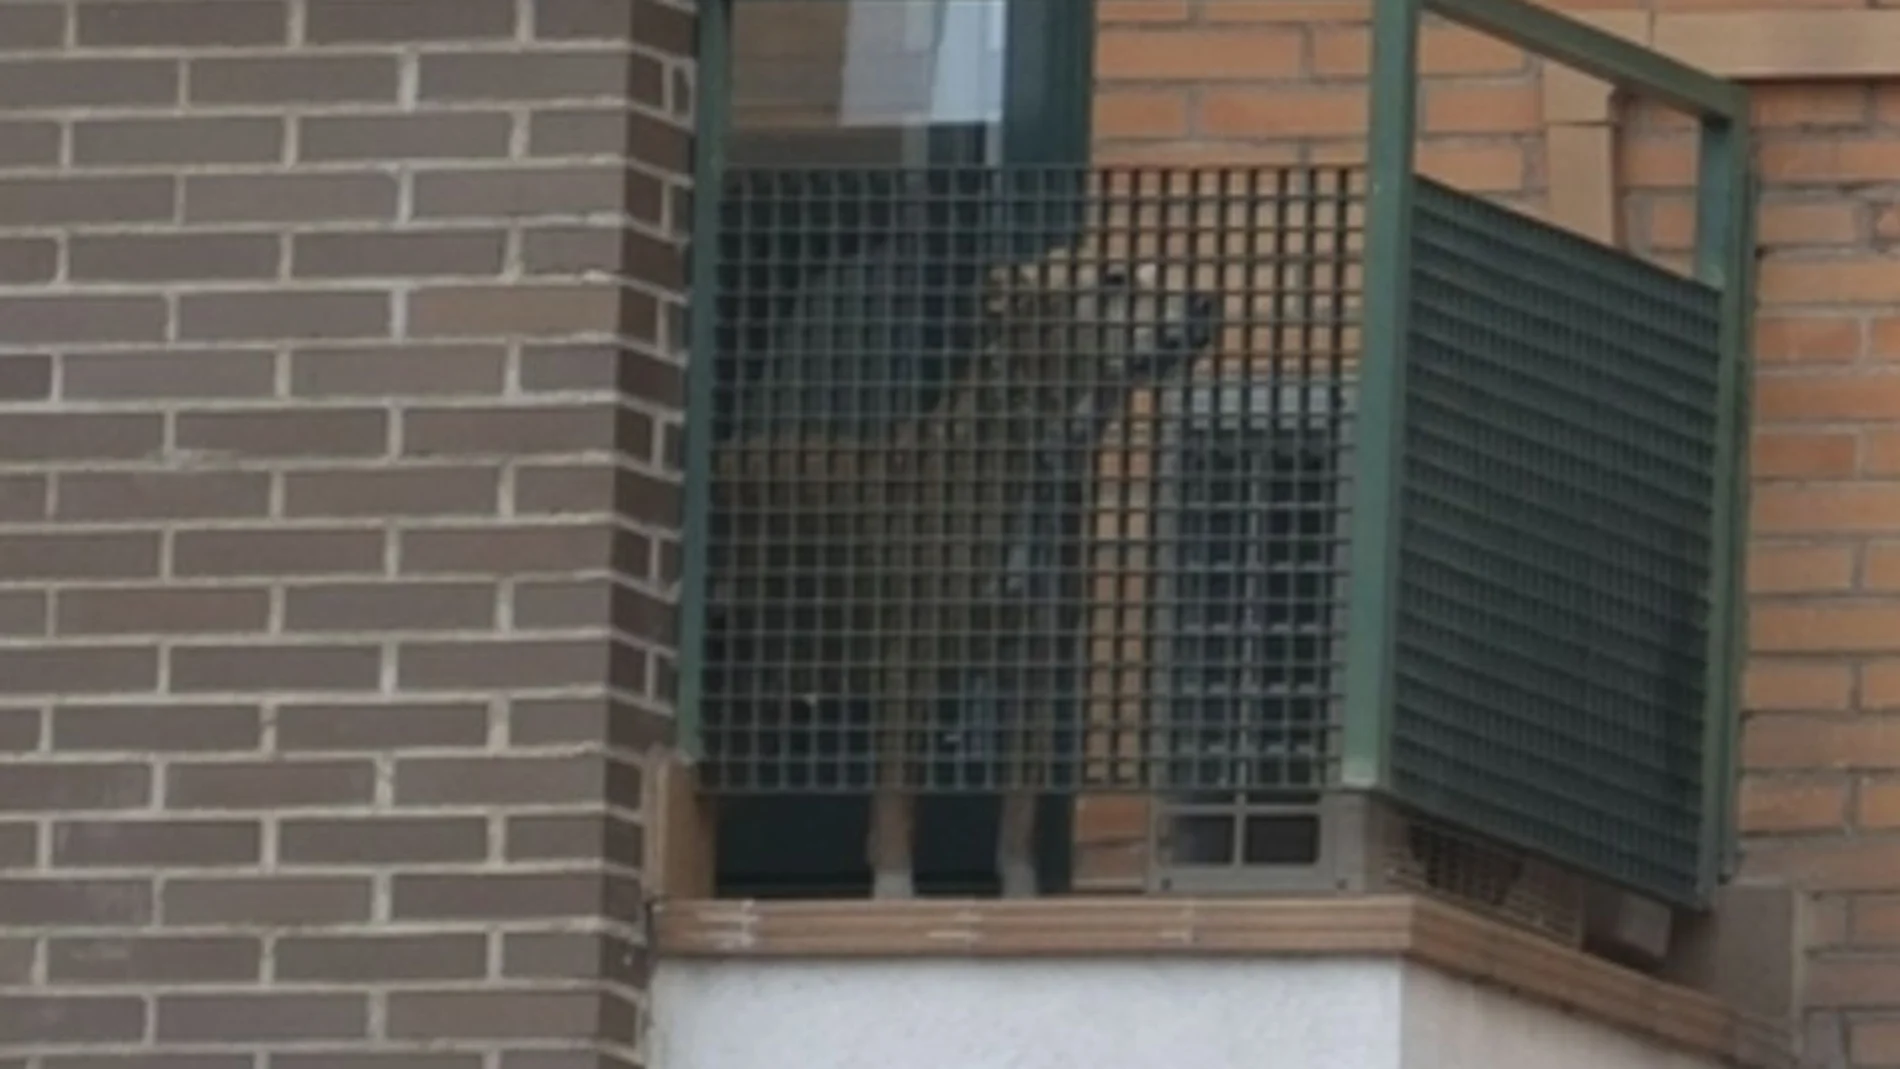 El perro Excalibur en el balcón del domicilio de la enfermera infectada de ébola